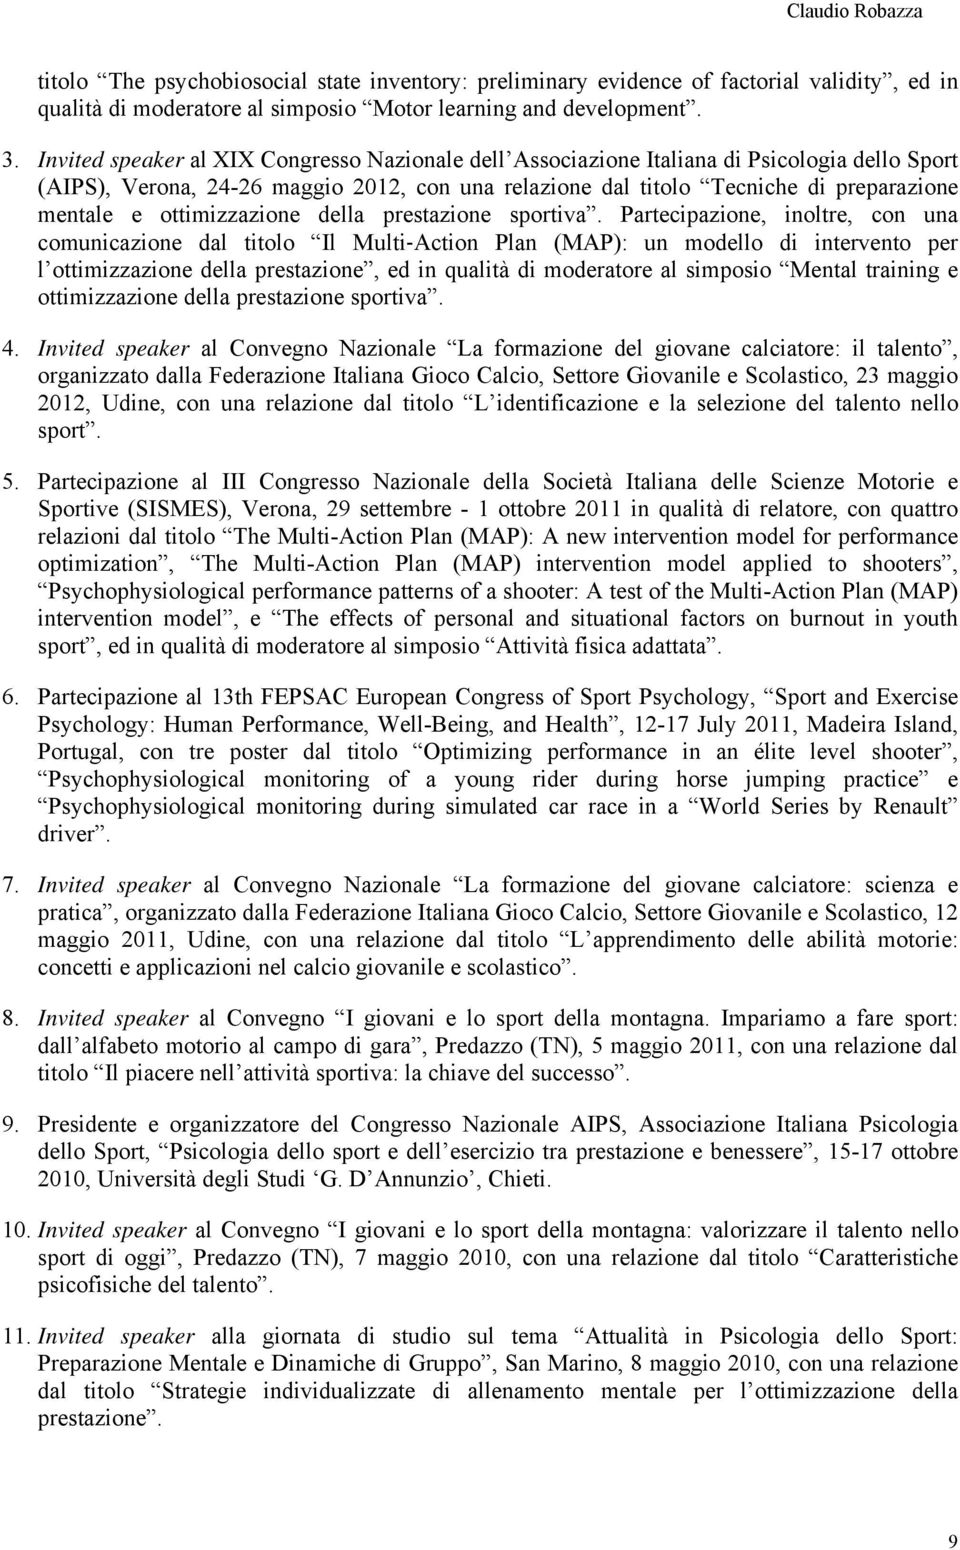 Curriculum Attivita Scientifica E Didattica Claudio Robazza Nato A Treviso Il Pdf Free Download